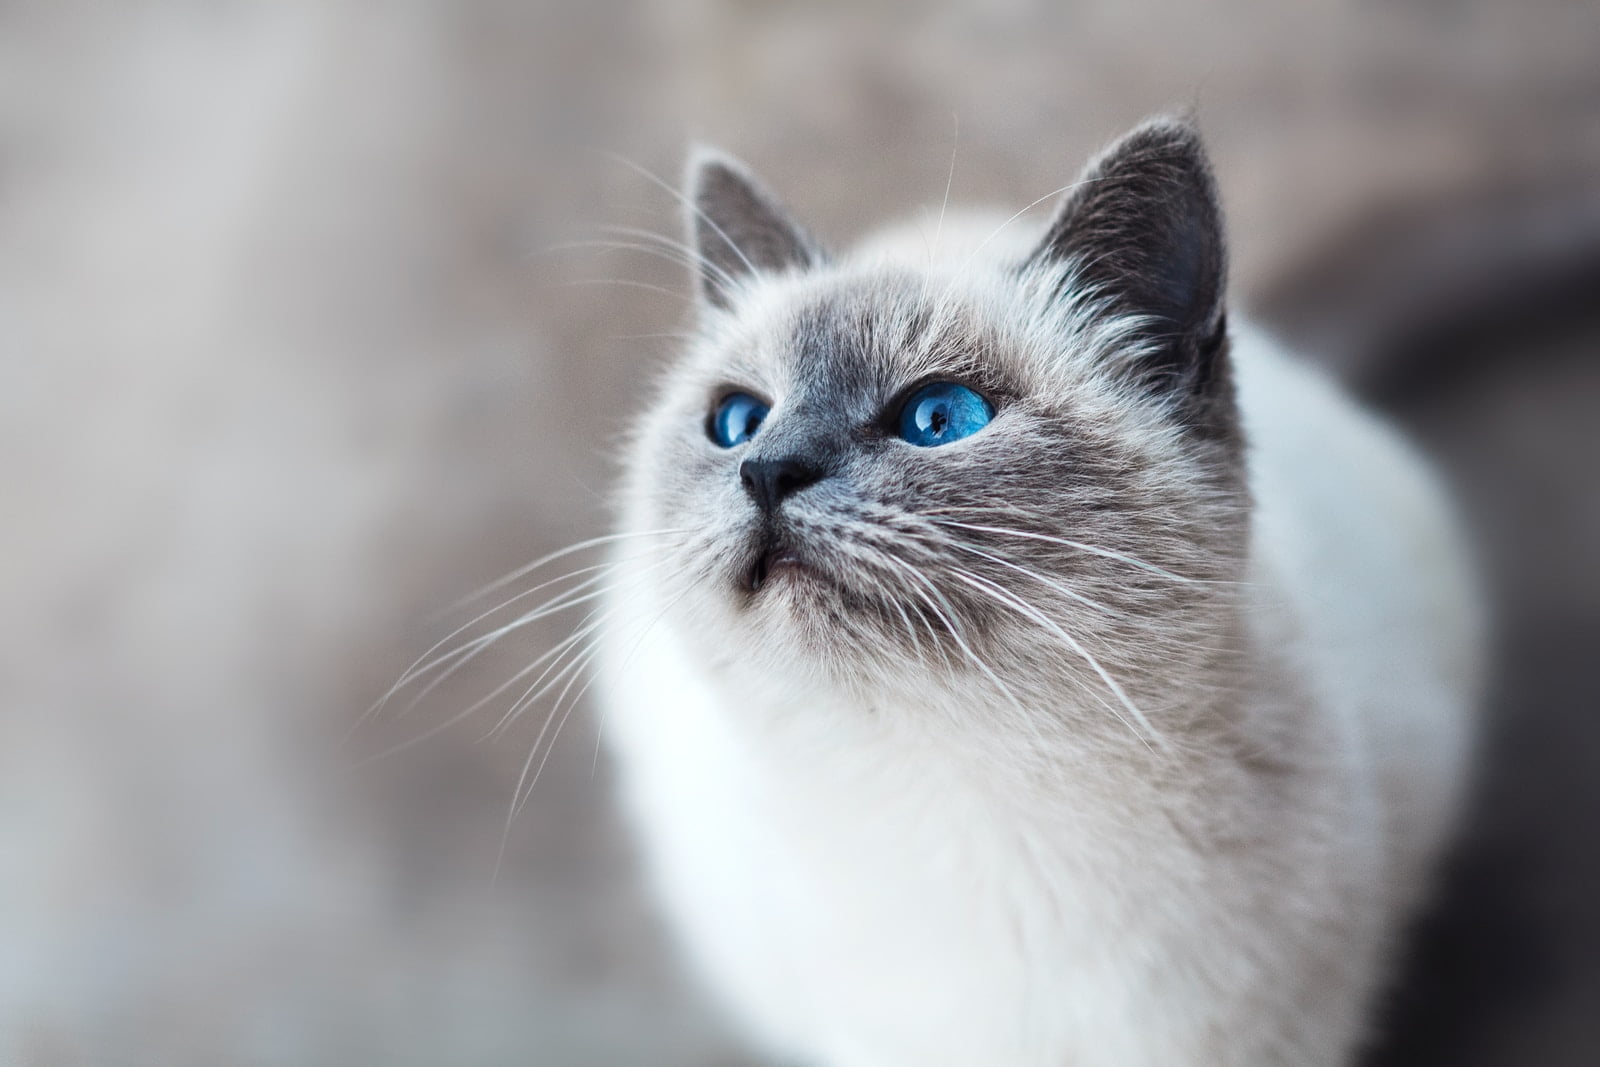 Autismo en gatos: ¿Pueden los gatitos ser autistas? 1